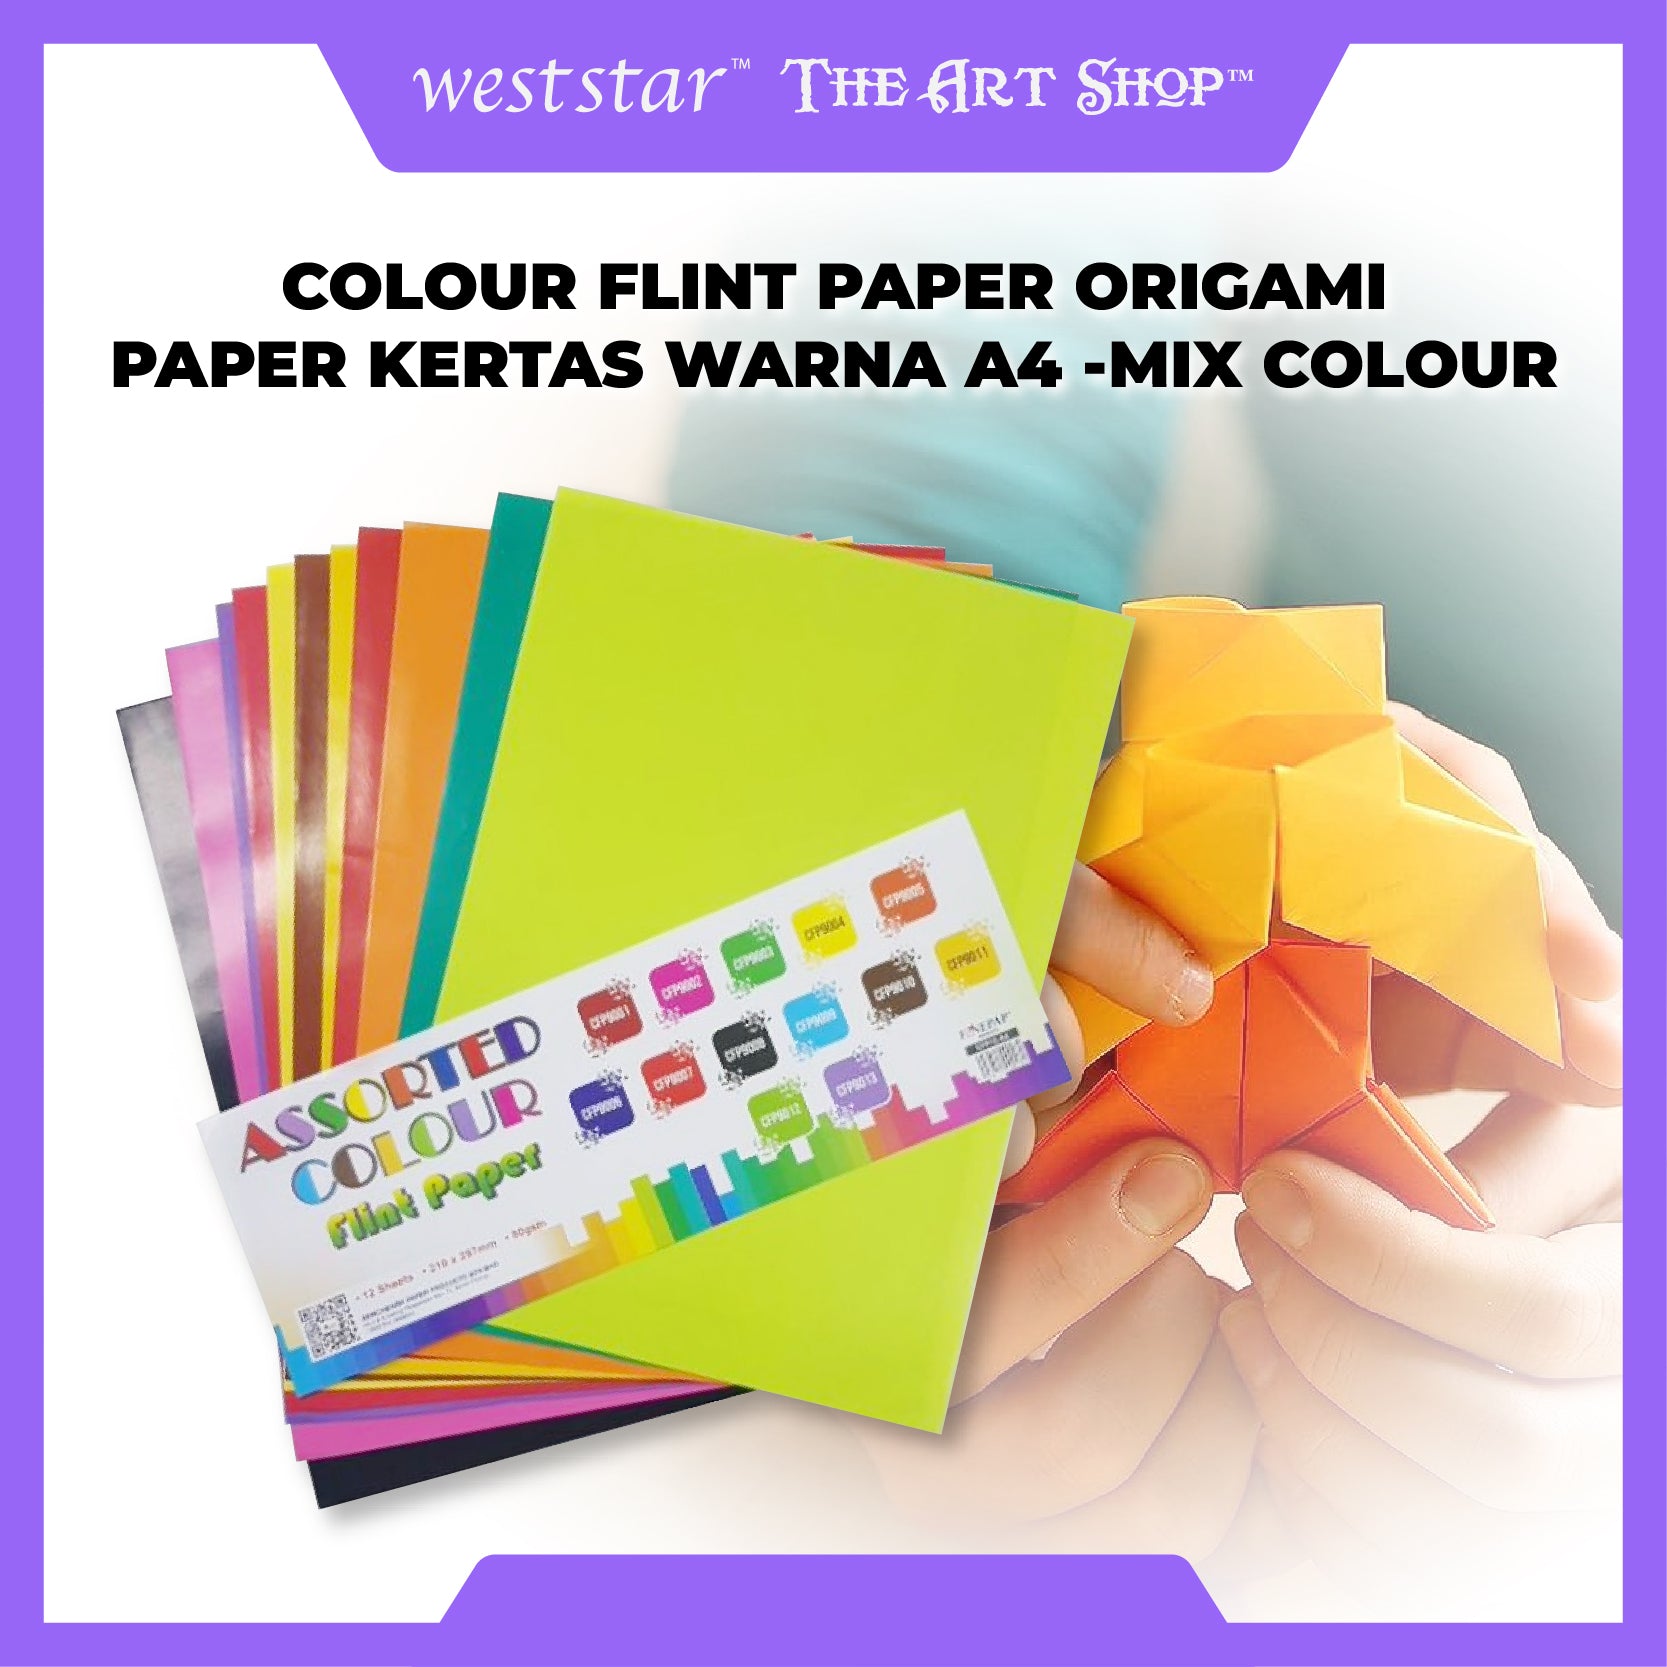 [WESTSTAR] Colour Flint Paper Origami Paper Kertas Warna A4 -Mix Colour